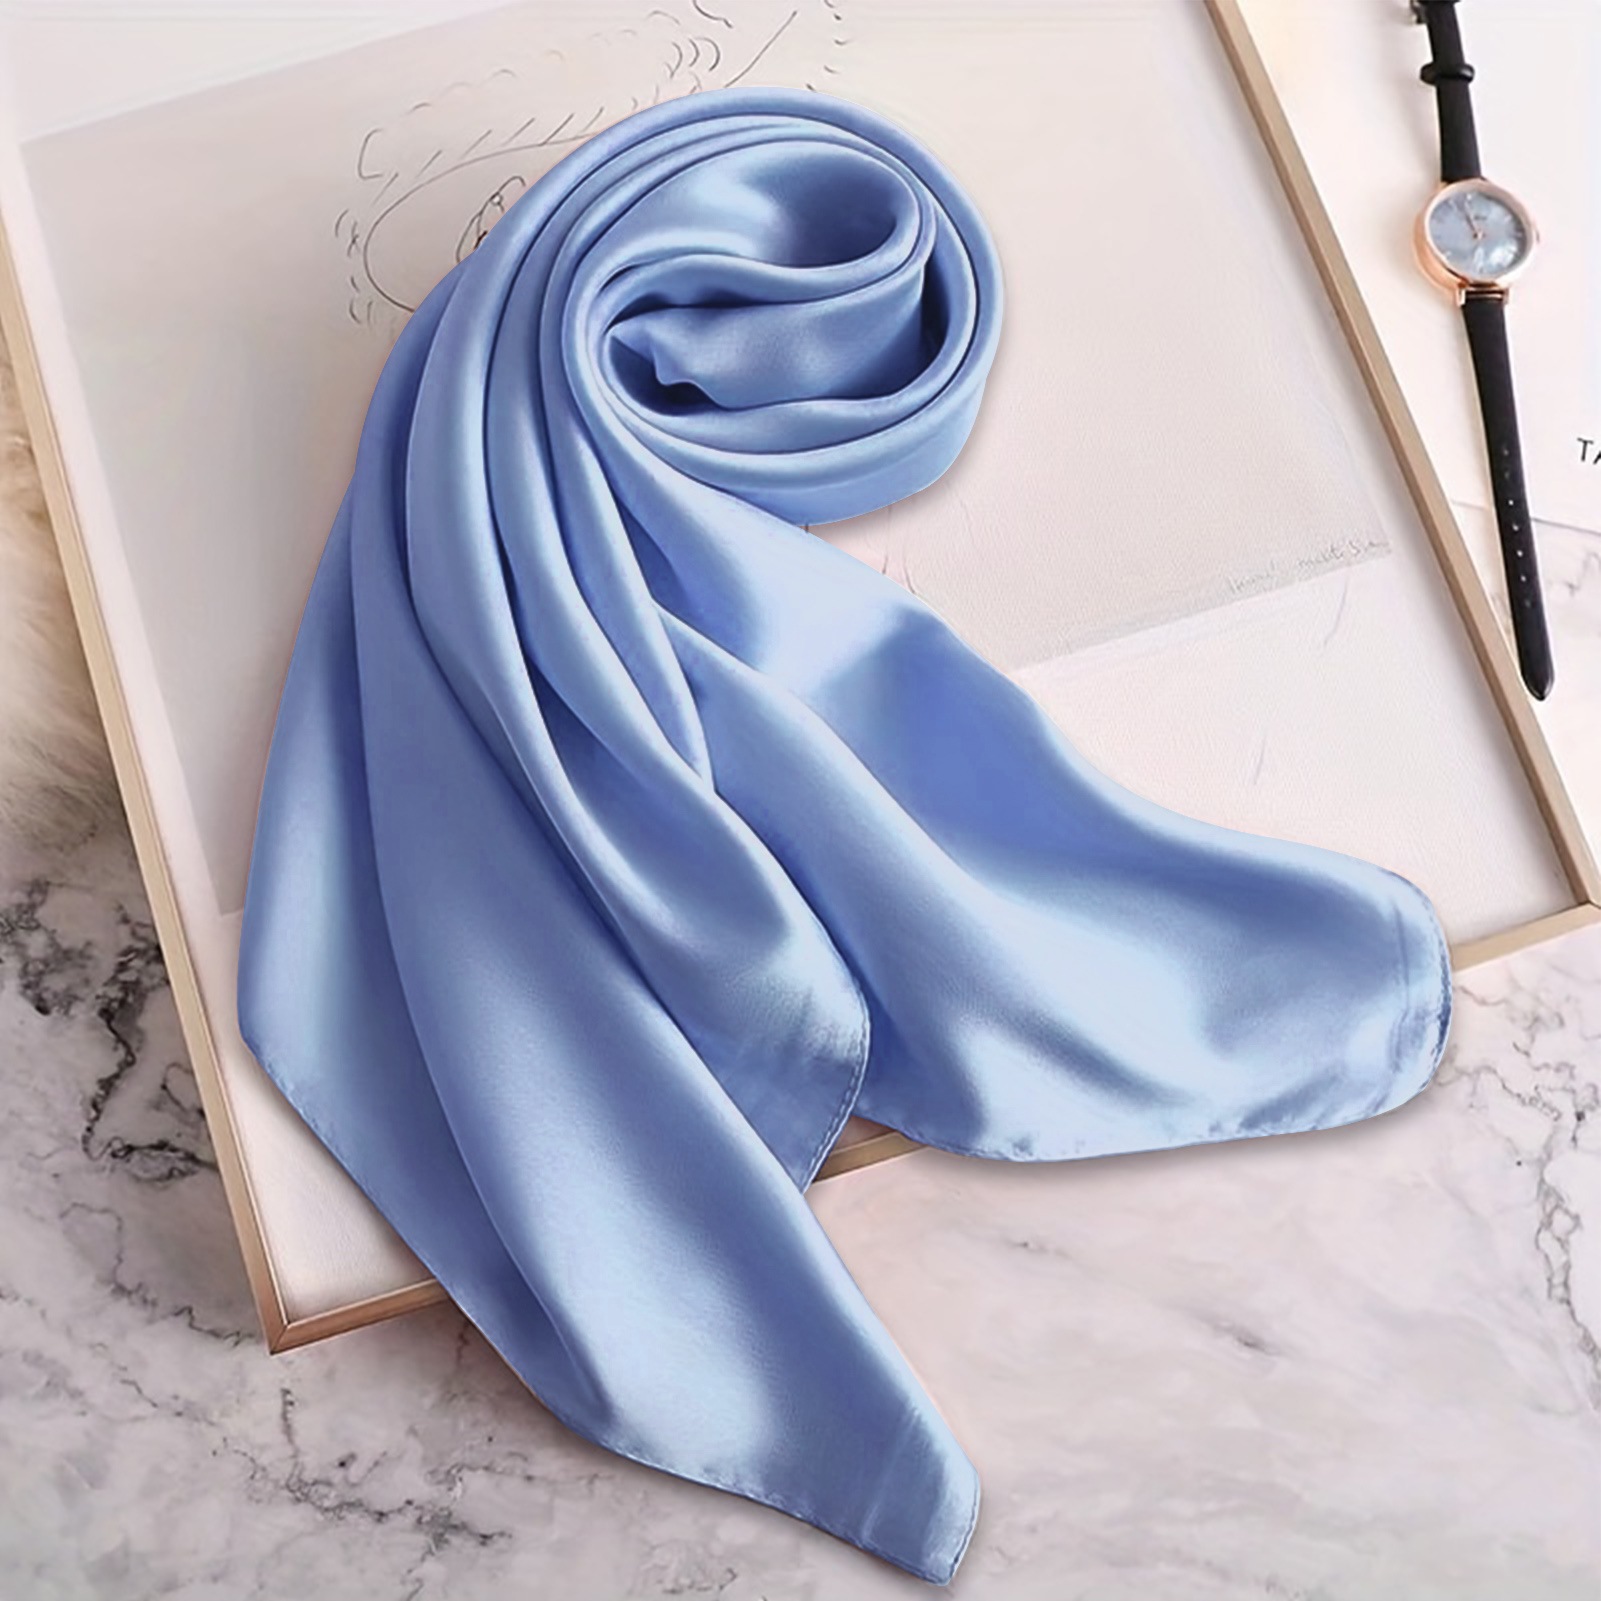 blue silk scarf